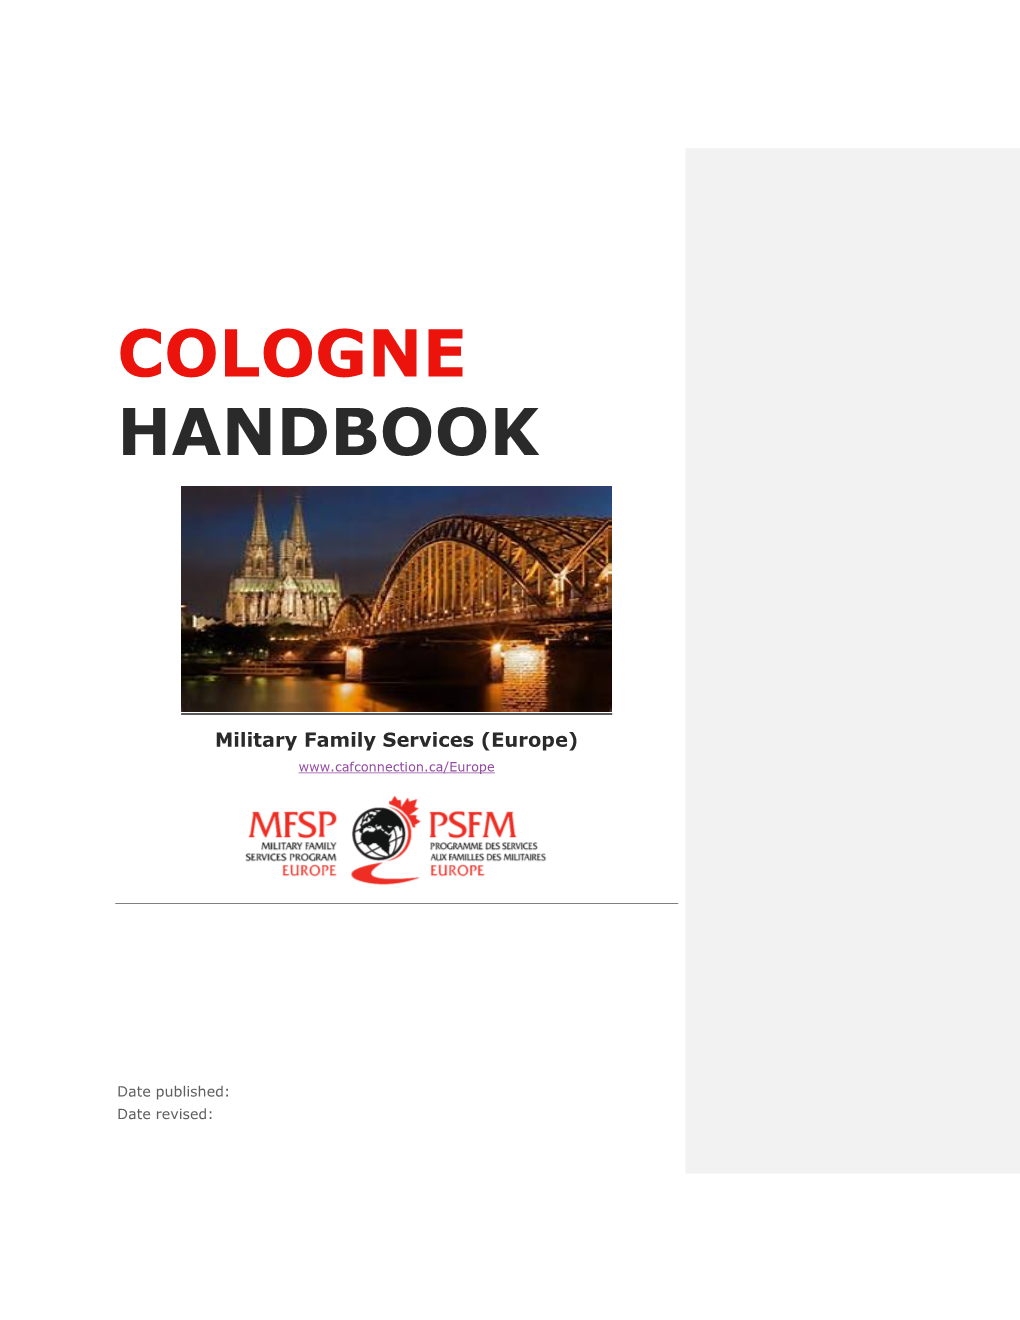 Cologne Guide